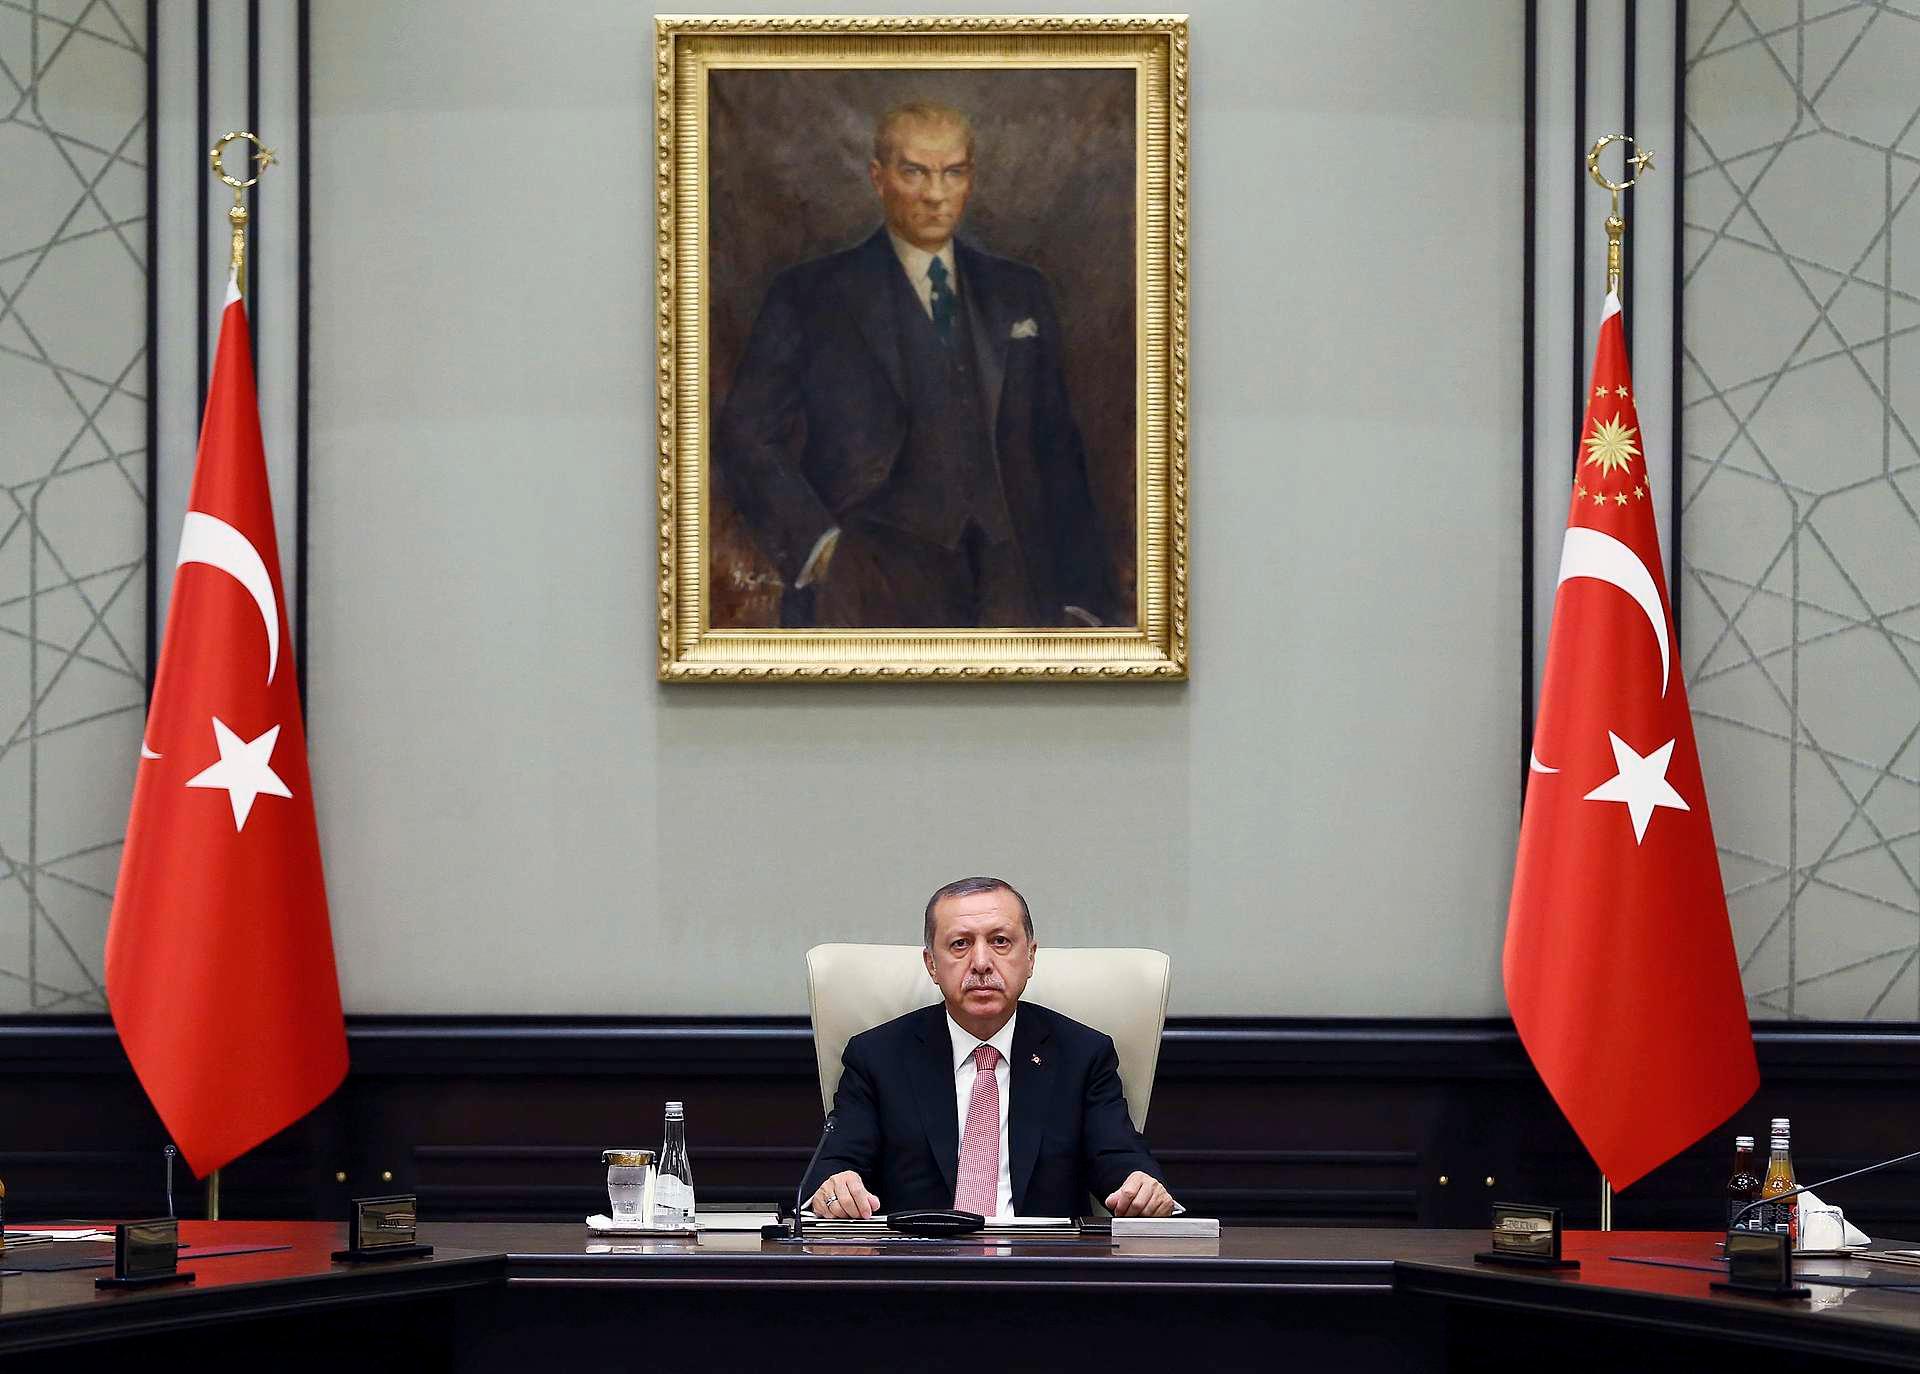 Myndighetenes opptreden representerer en alvorlig inngripen og begrensning i den akademiske friheten, skriver debattantene om president Erdogans maktbruk.